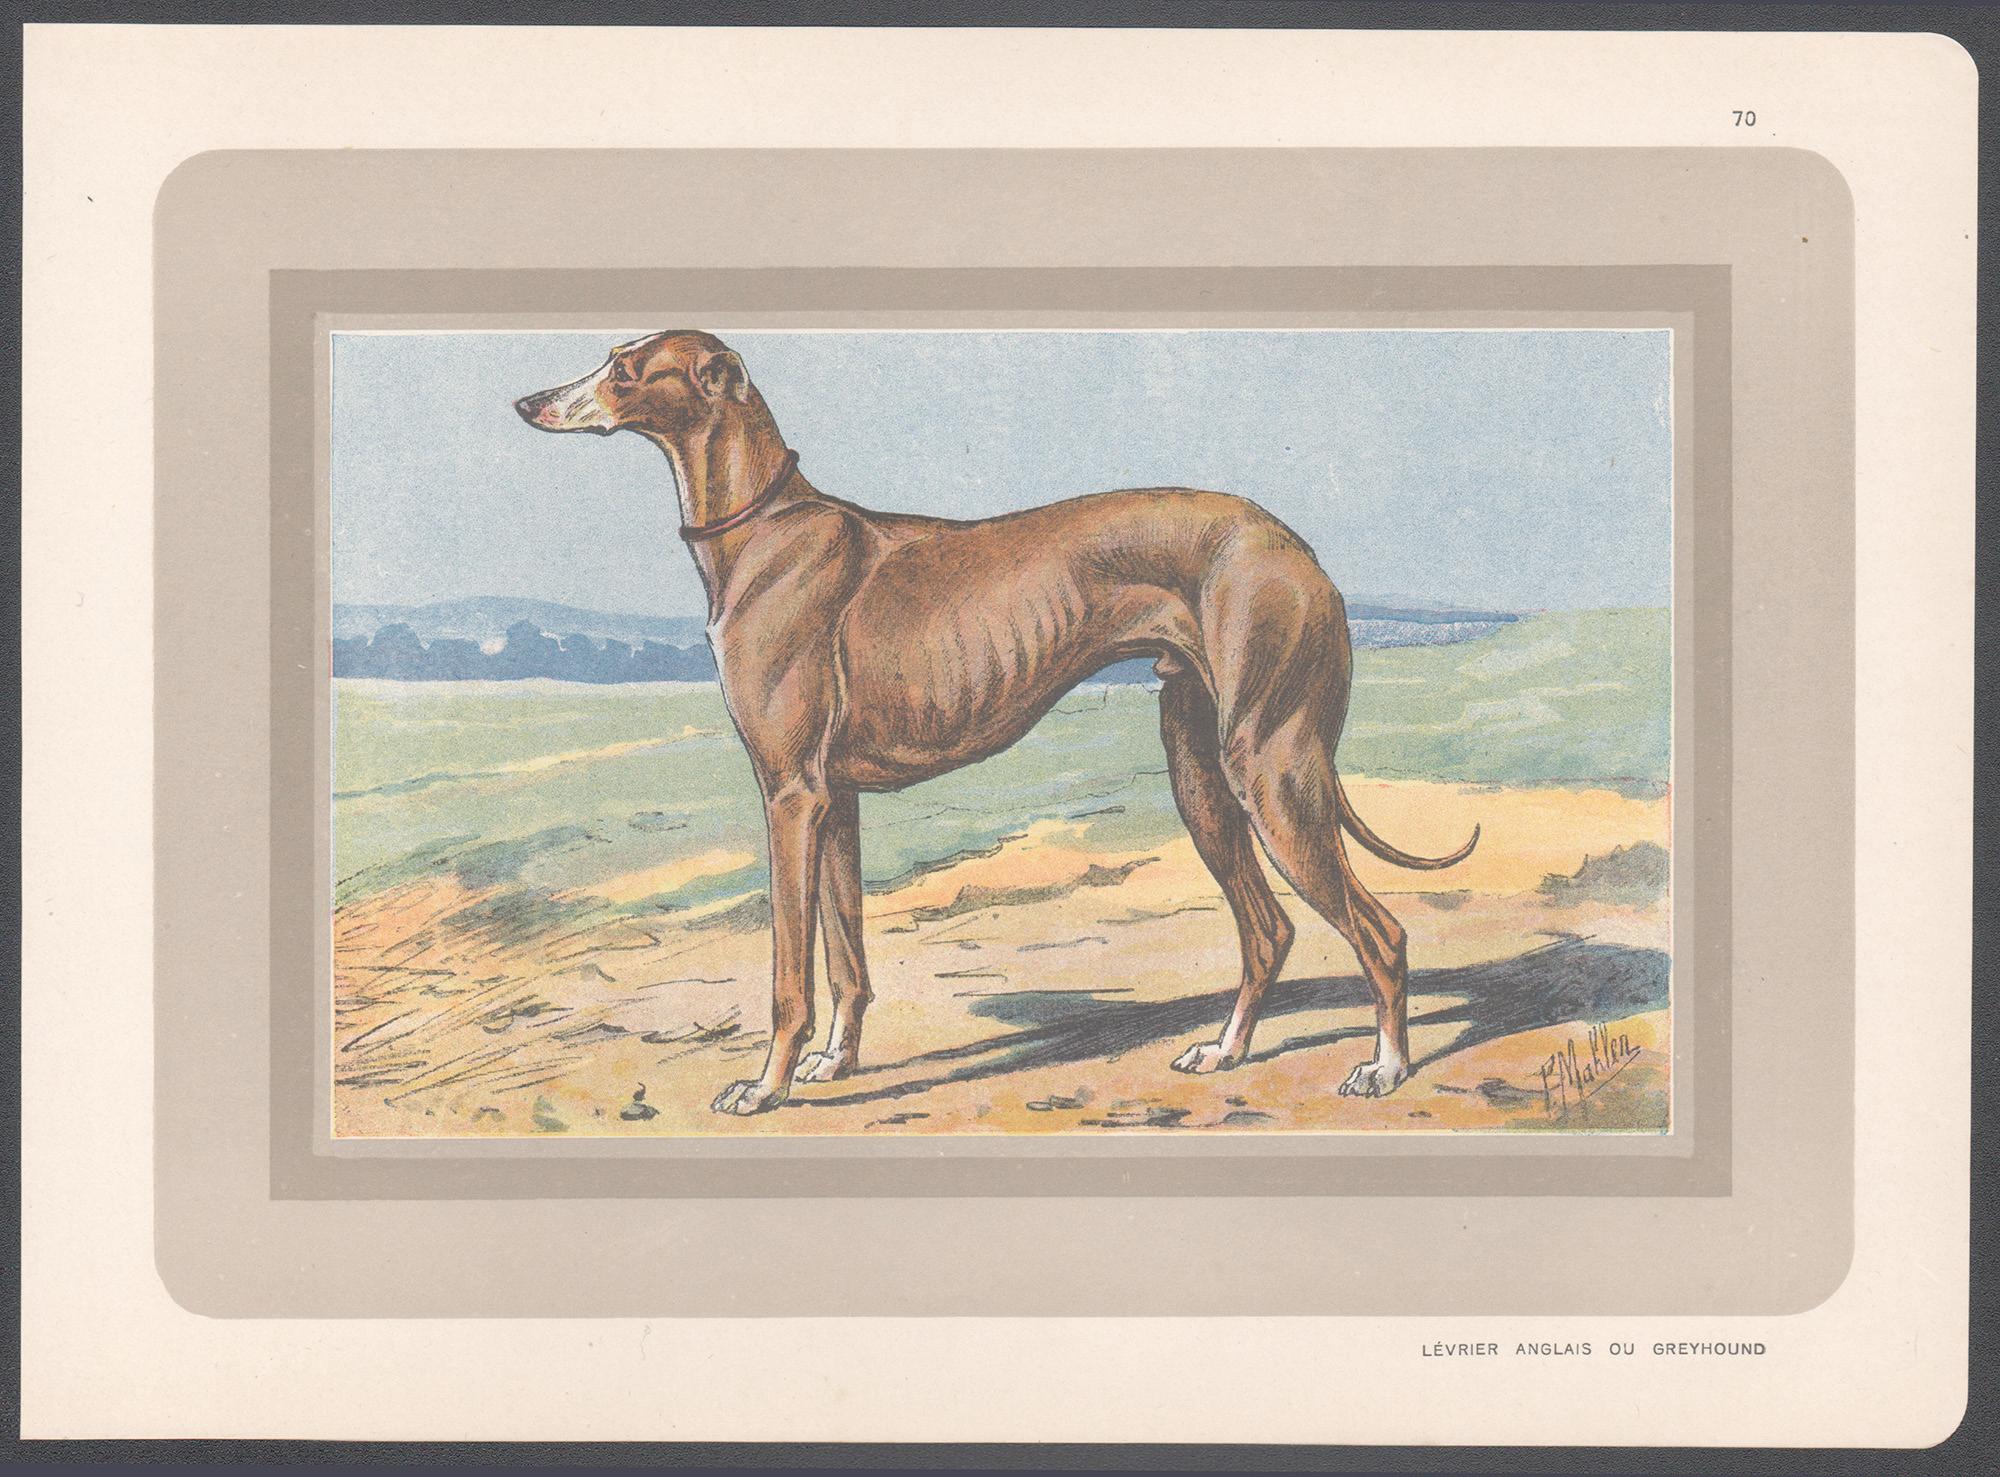 Impression chromolithographie d'un lévrier, chien de chasse français, années 1930 - Print de P. Mahler